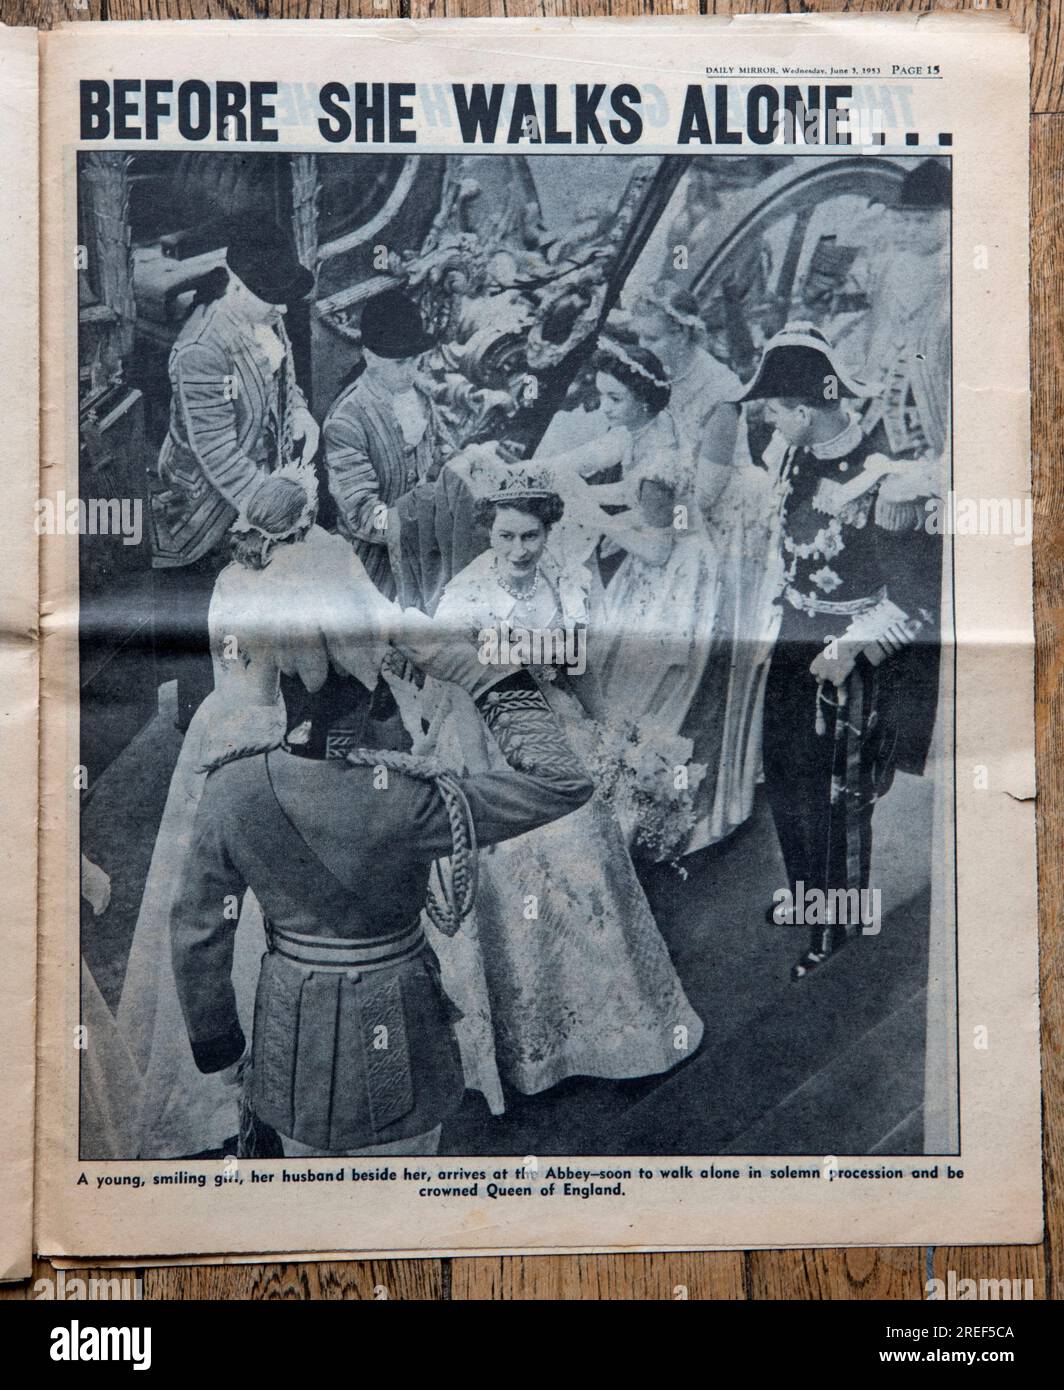 Queen Elizabeth II. Krönung Spezial, 2. Juni 1953. Die Zeitung Daily Mirror. Nachrichten auf der Titelseite. Vom 3. Juni 1953. Eine alte gebrauchte Kopie einer britischen Boulevardzeitung. 1950er Vereinigtes Königreich. Stockfoto